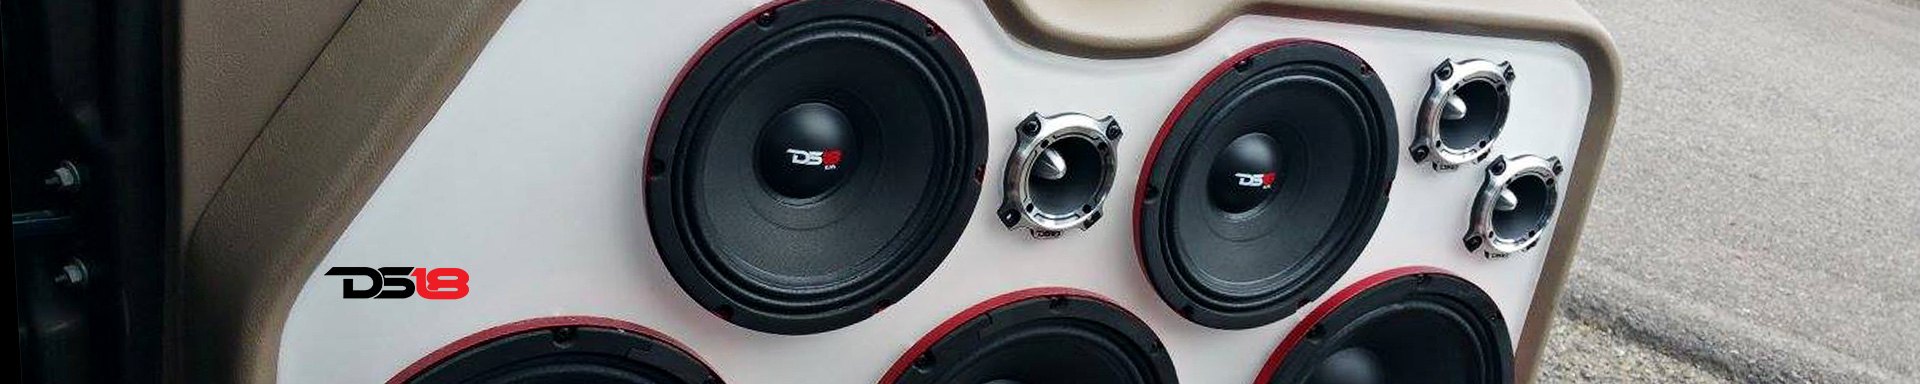 DS18 Speakers